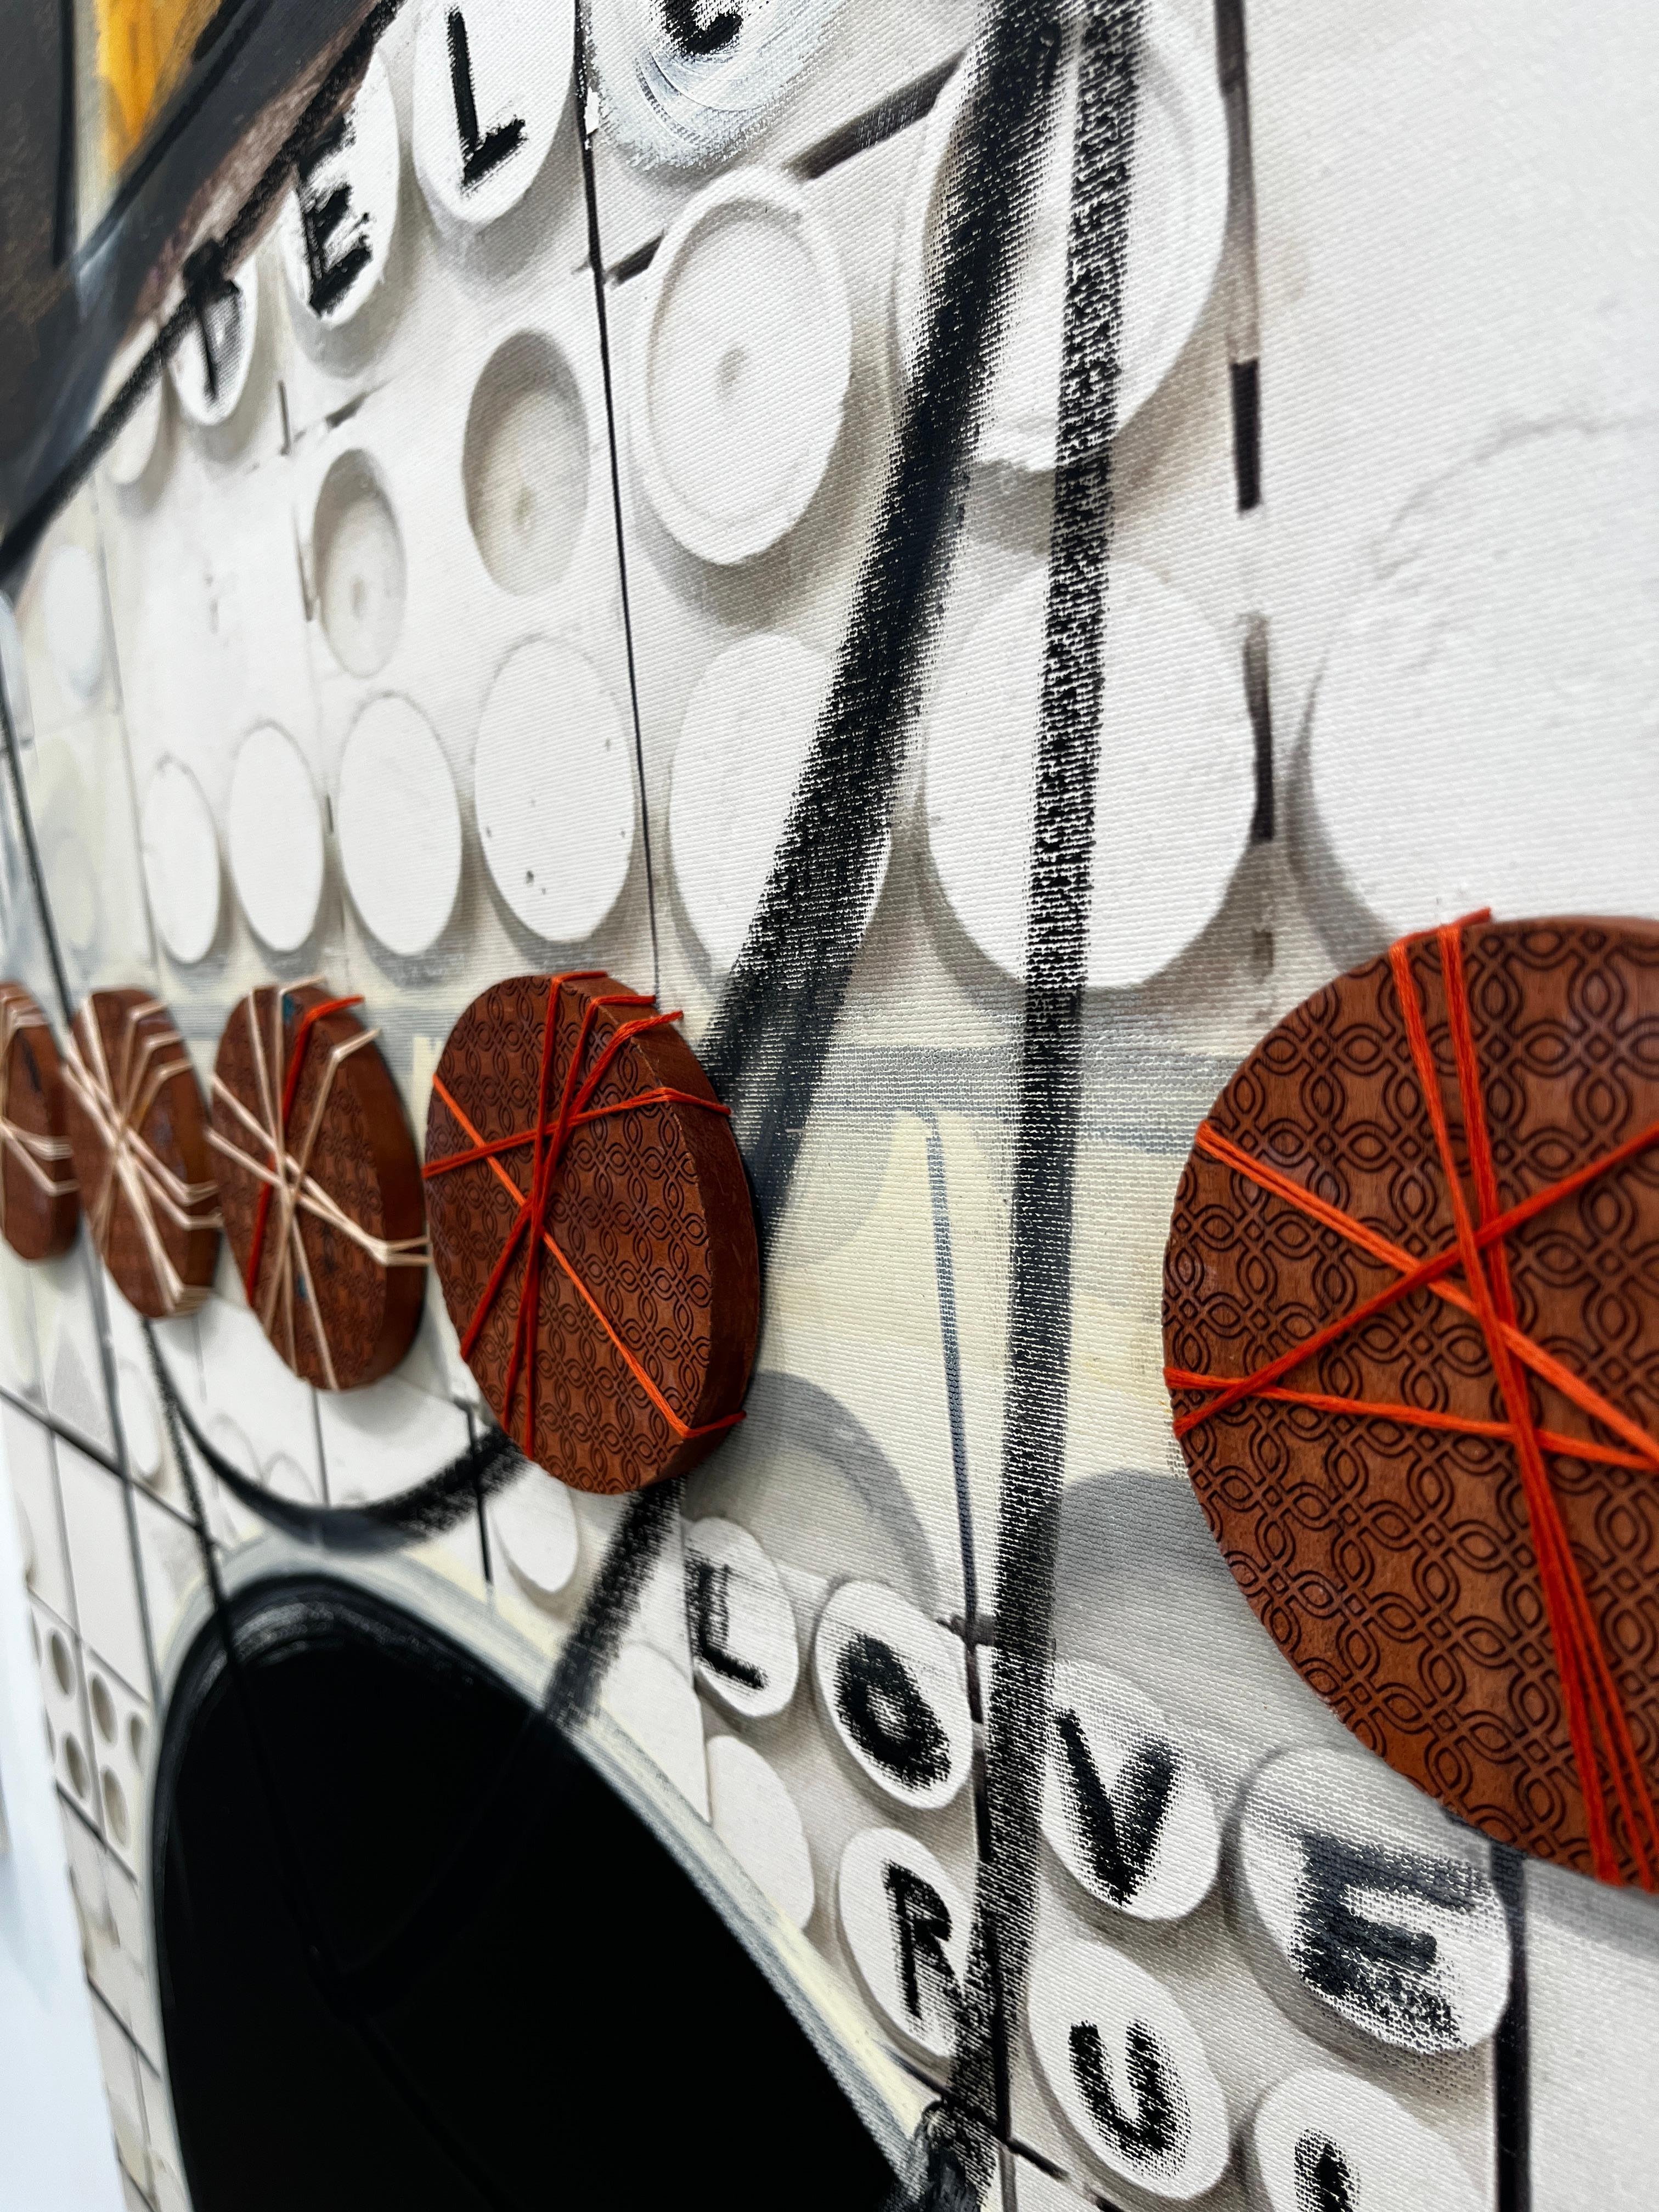 Gemischte Medien (70″ x 30″)

ÜBER DEN KÜNSTLER -
Der in Miami lebende Künstler Anthony Liggins ist vor allem für seine träumerischen, abstrakten Kunstwerke und seine vielschichtige Malweise bekannt. Die Kreativität, die ihn in seinen 12 Jahren als